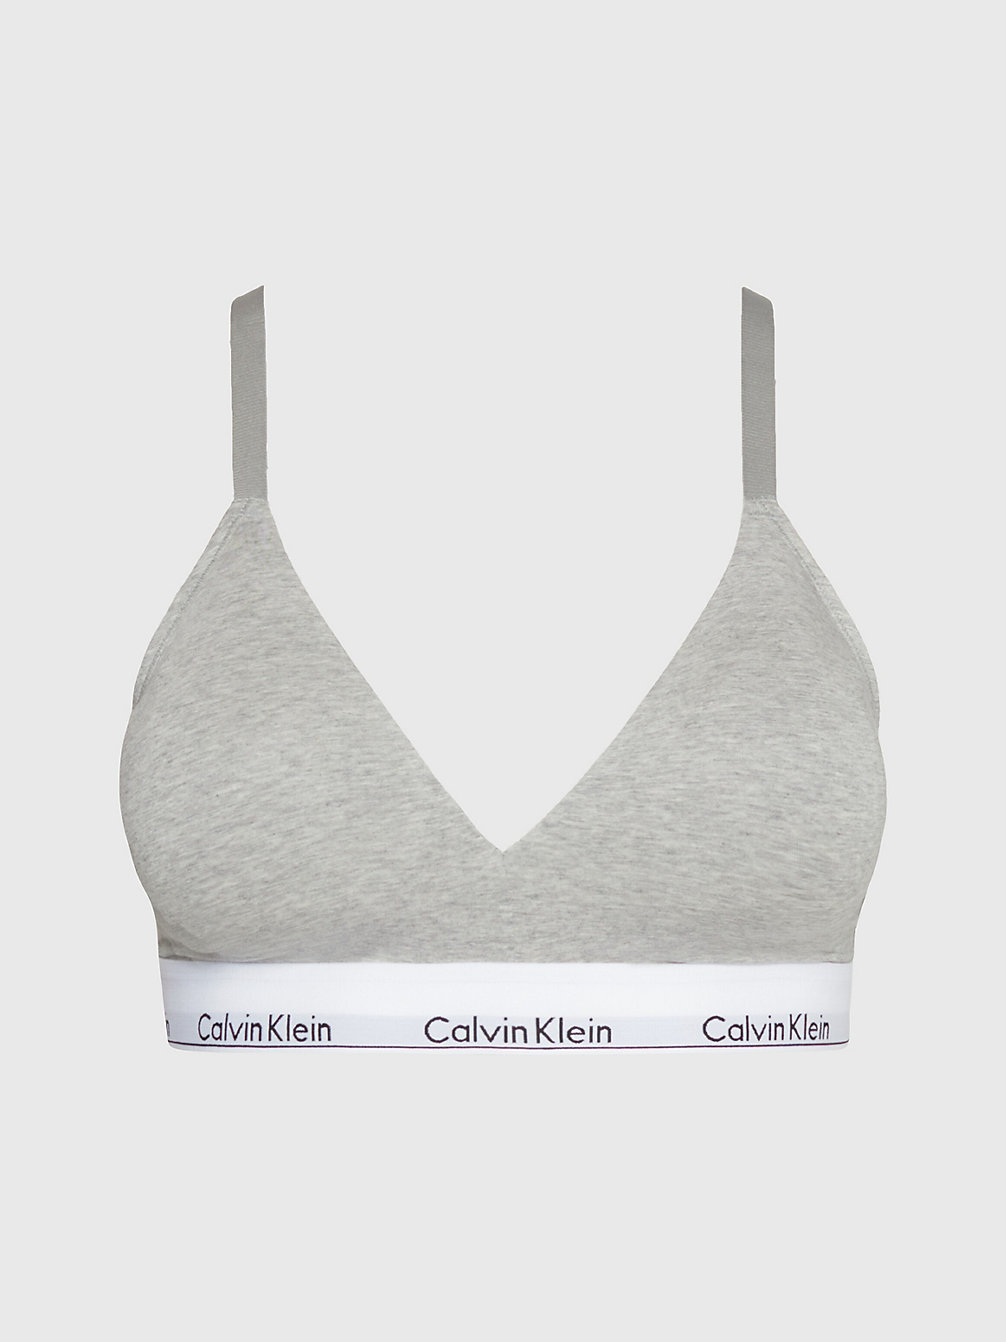 GREY HEATHER > Grote Maat Triangel Bh - Modern Cotton > undefined dames - Calvin Klein